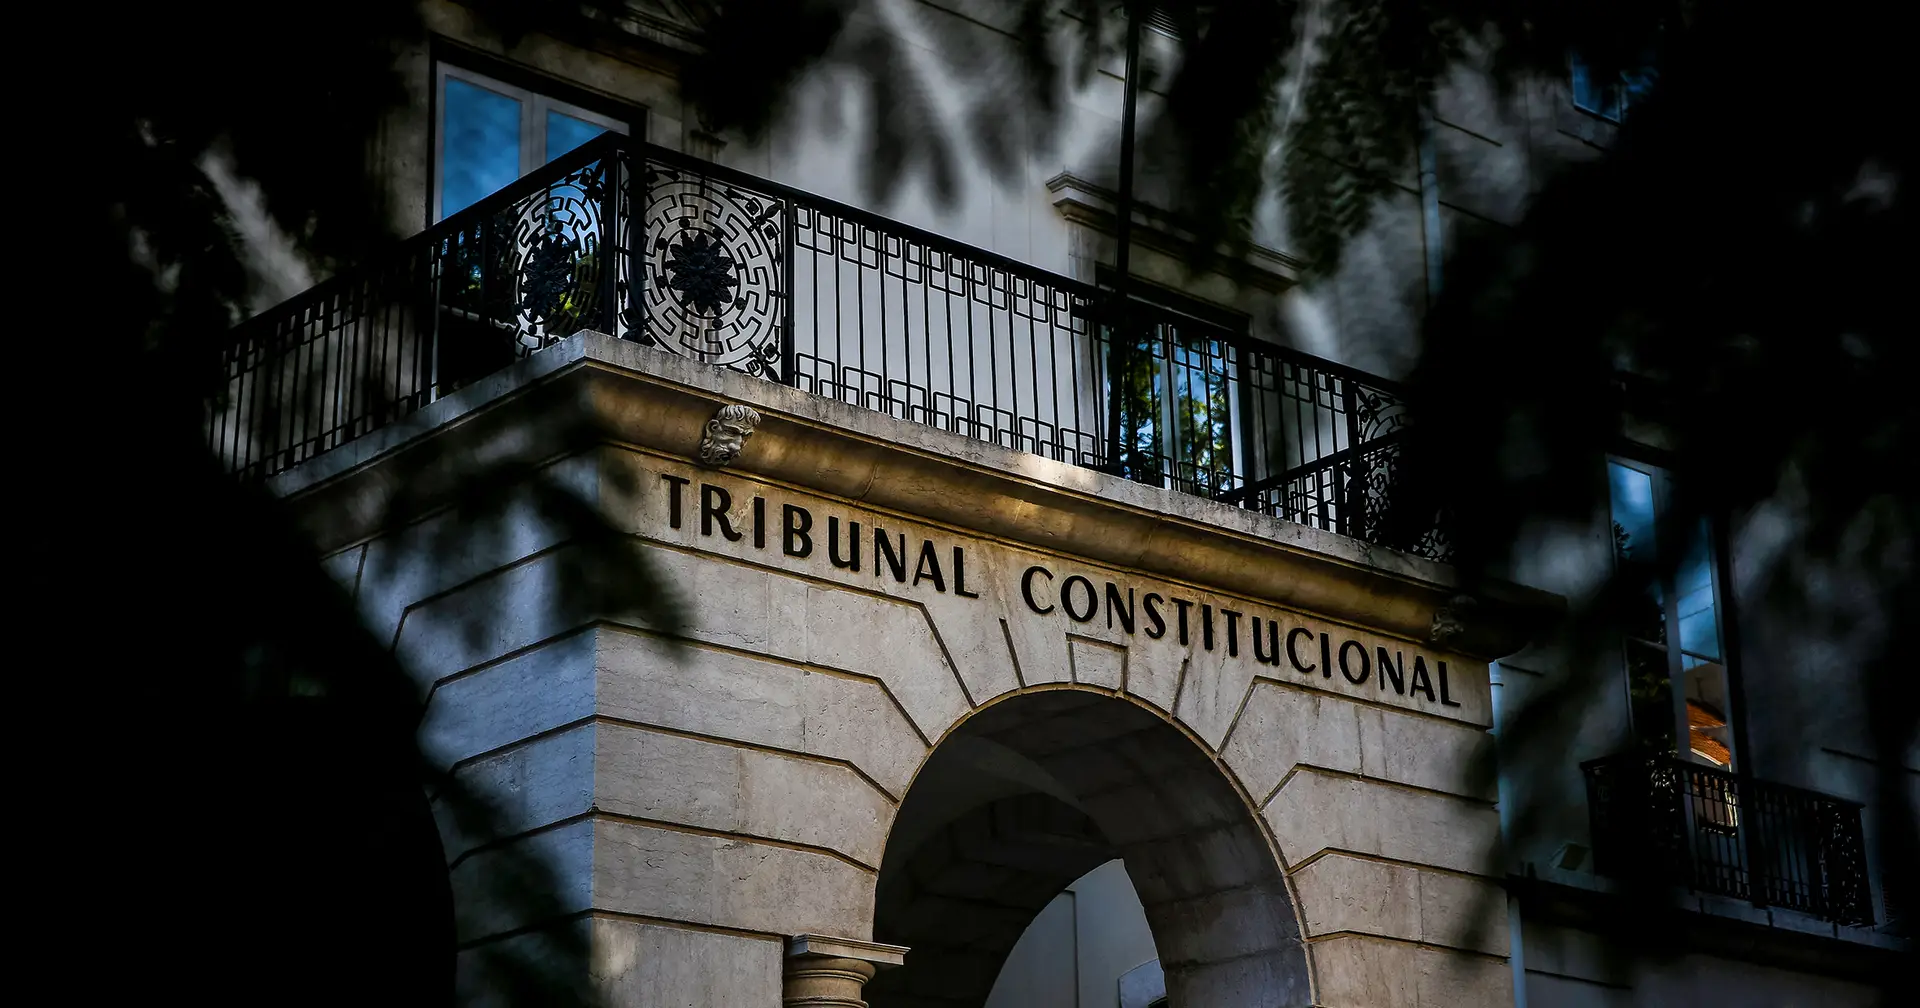 Eleição de juiz. Tribunal Constitucional mantém secretismo e passa a bola para o Parlamento